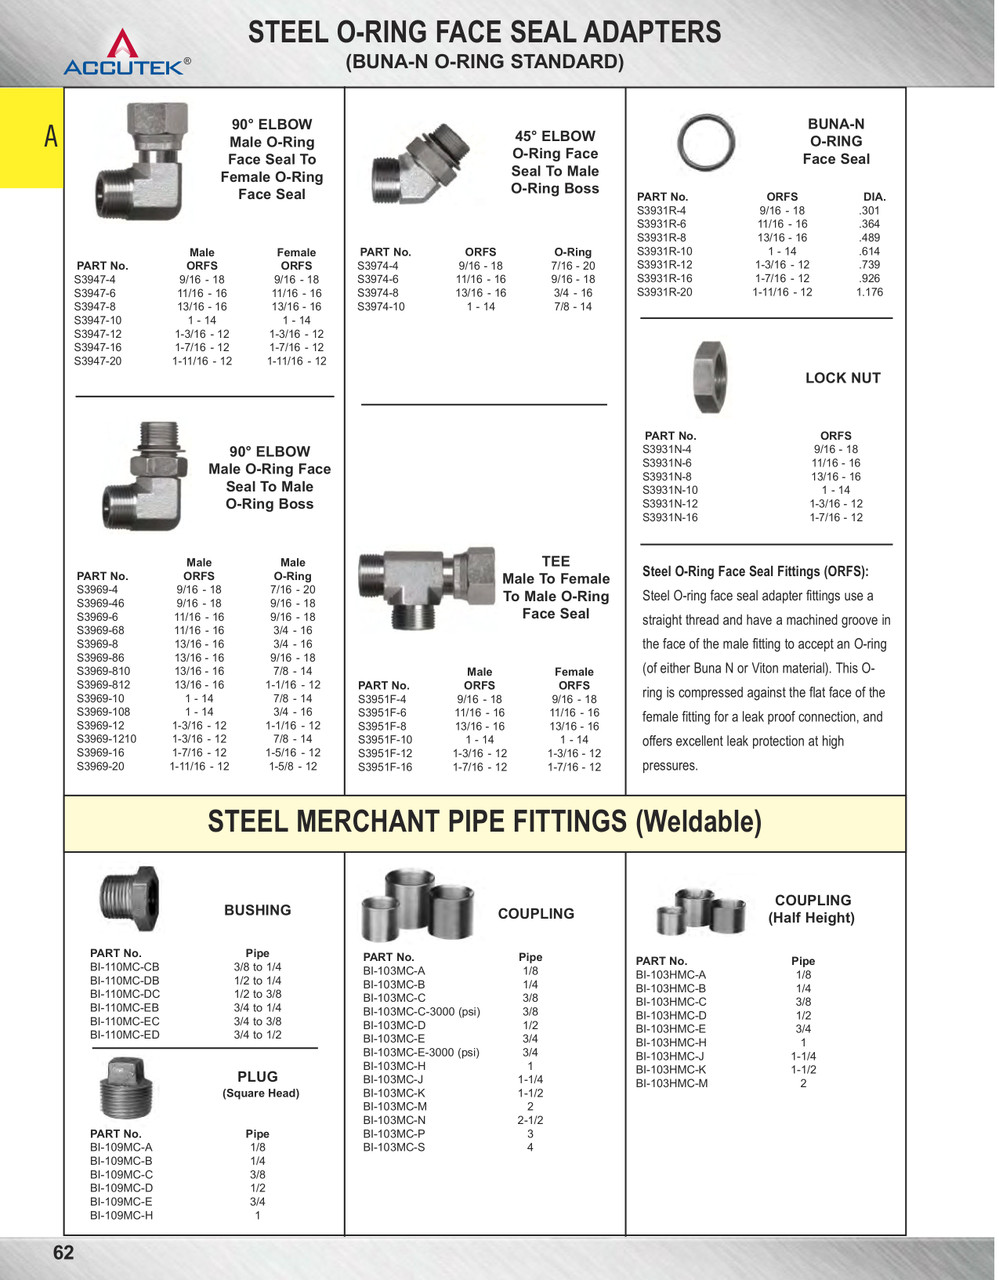 1/4" Steel Male NPT Plug  BI-109MC-B